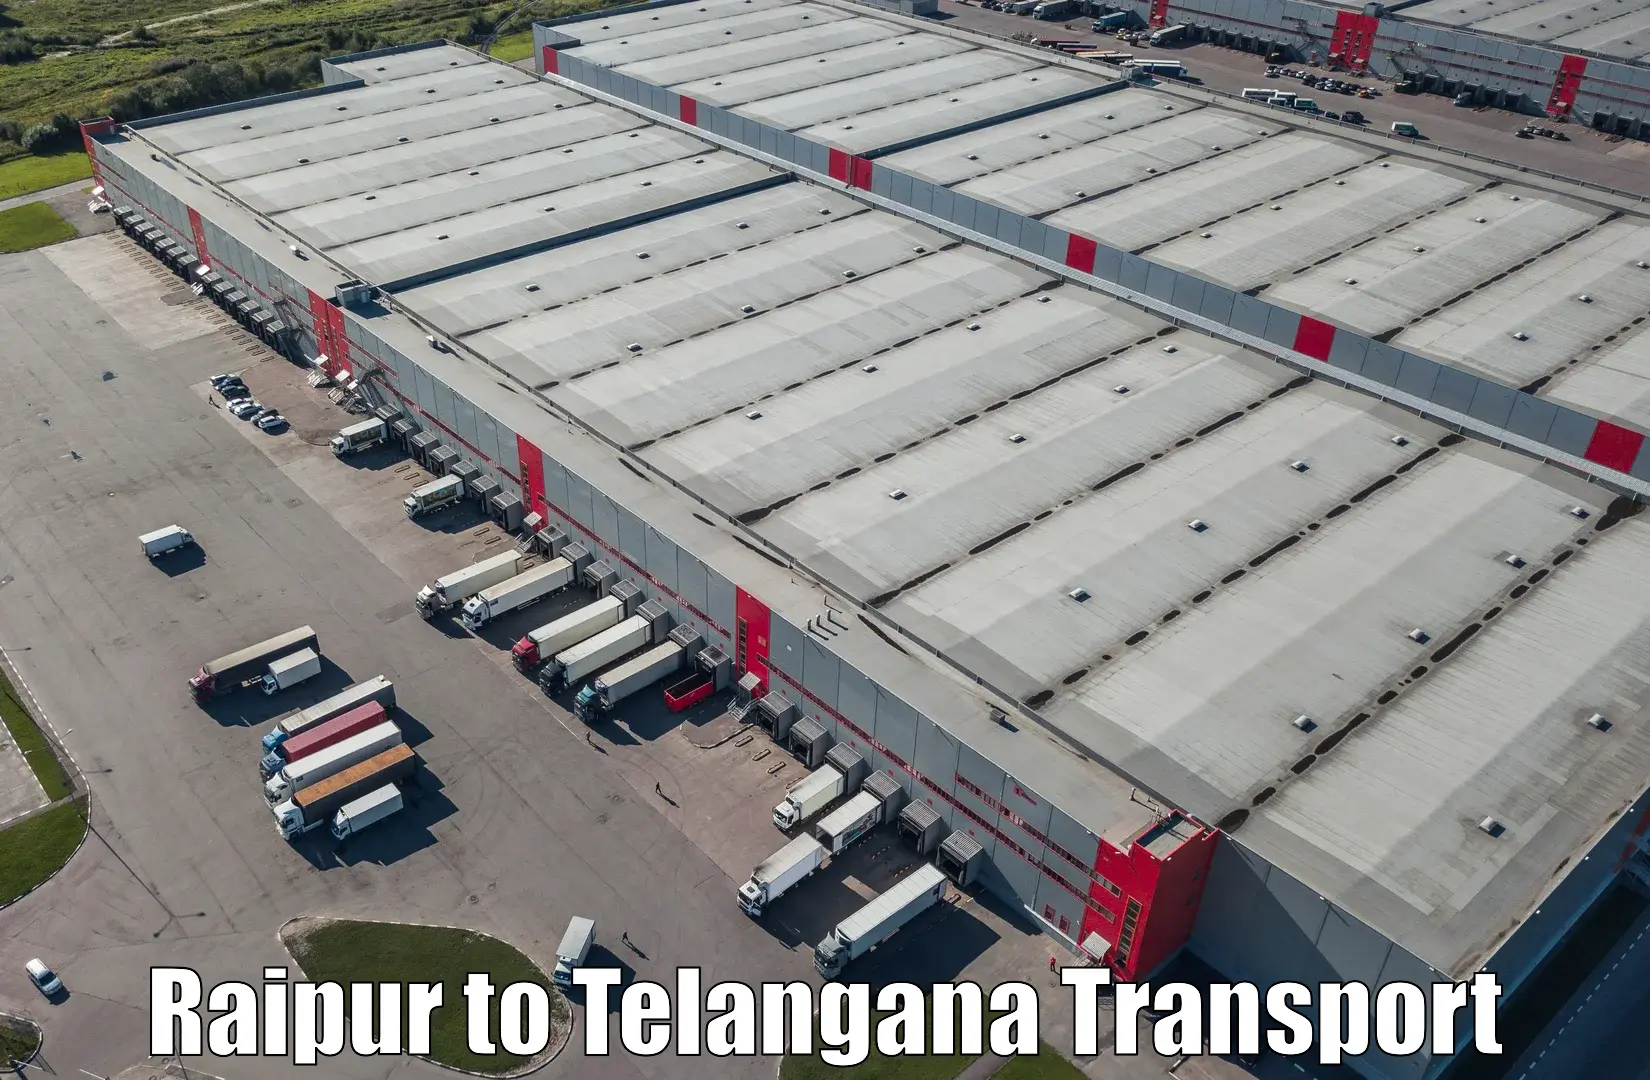 Container transport service Raipur to Nalgonda